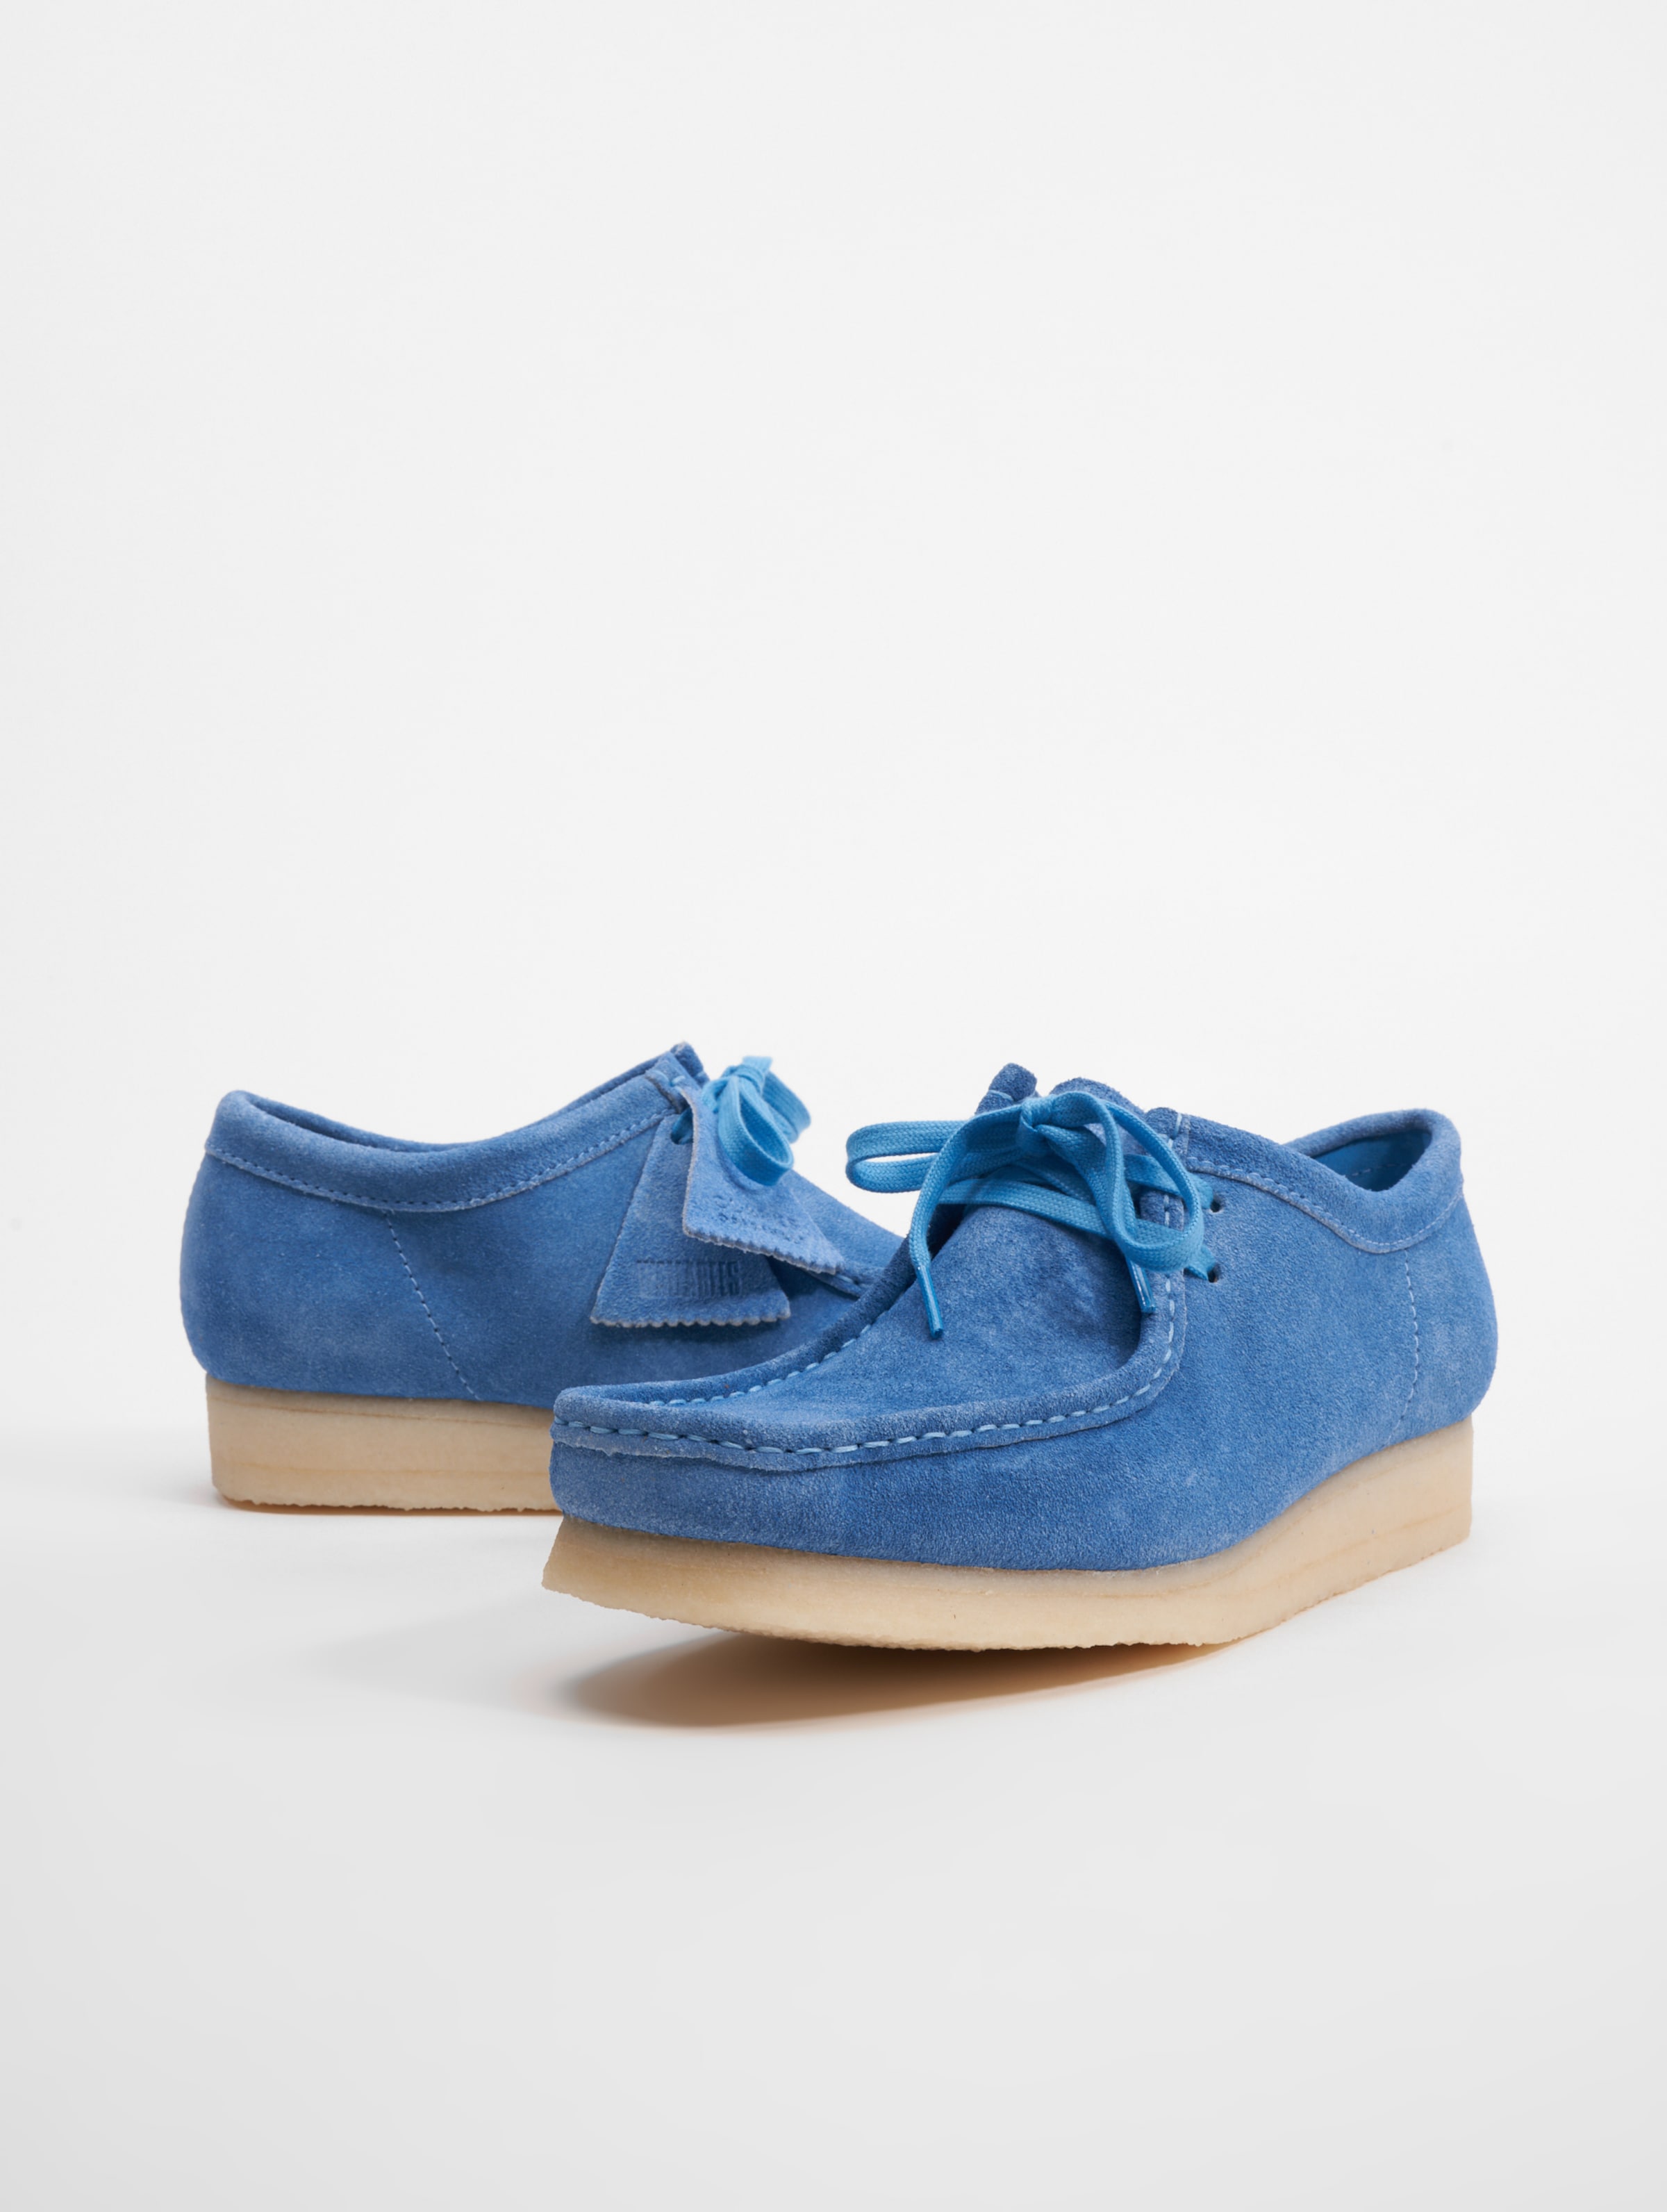 Clarks Originals Wallabee Schuhe Mannen op kleur blauw, Maat 42.5